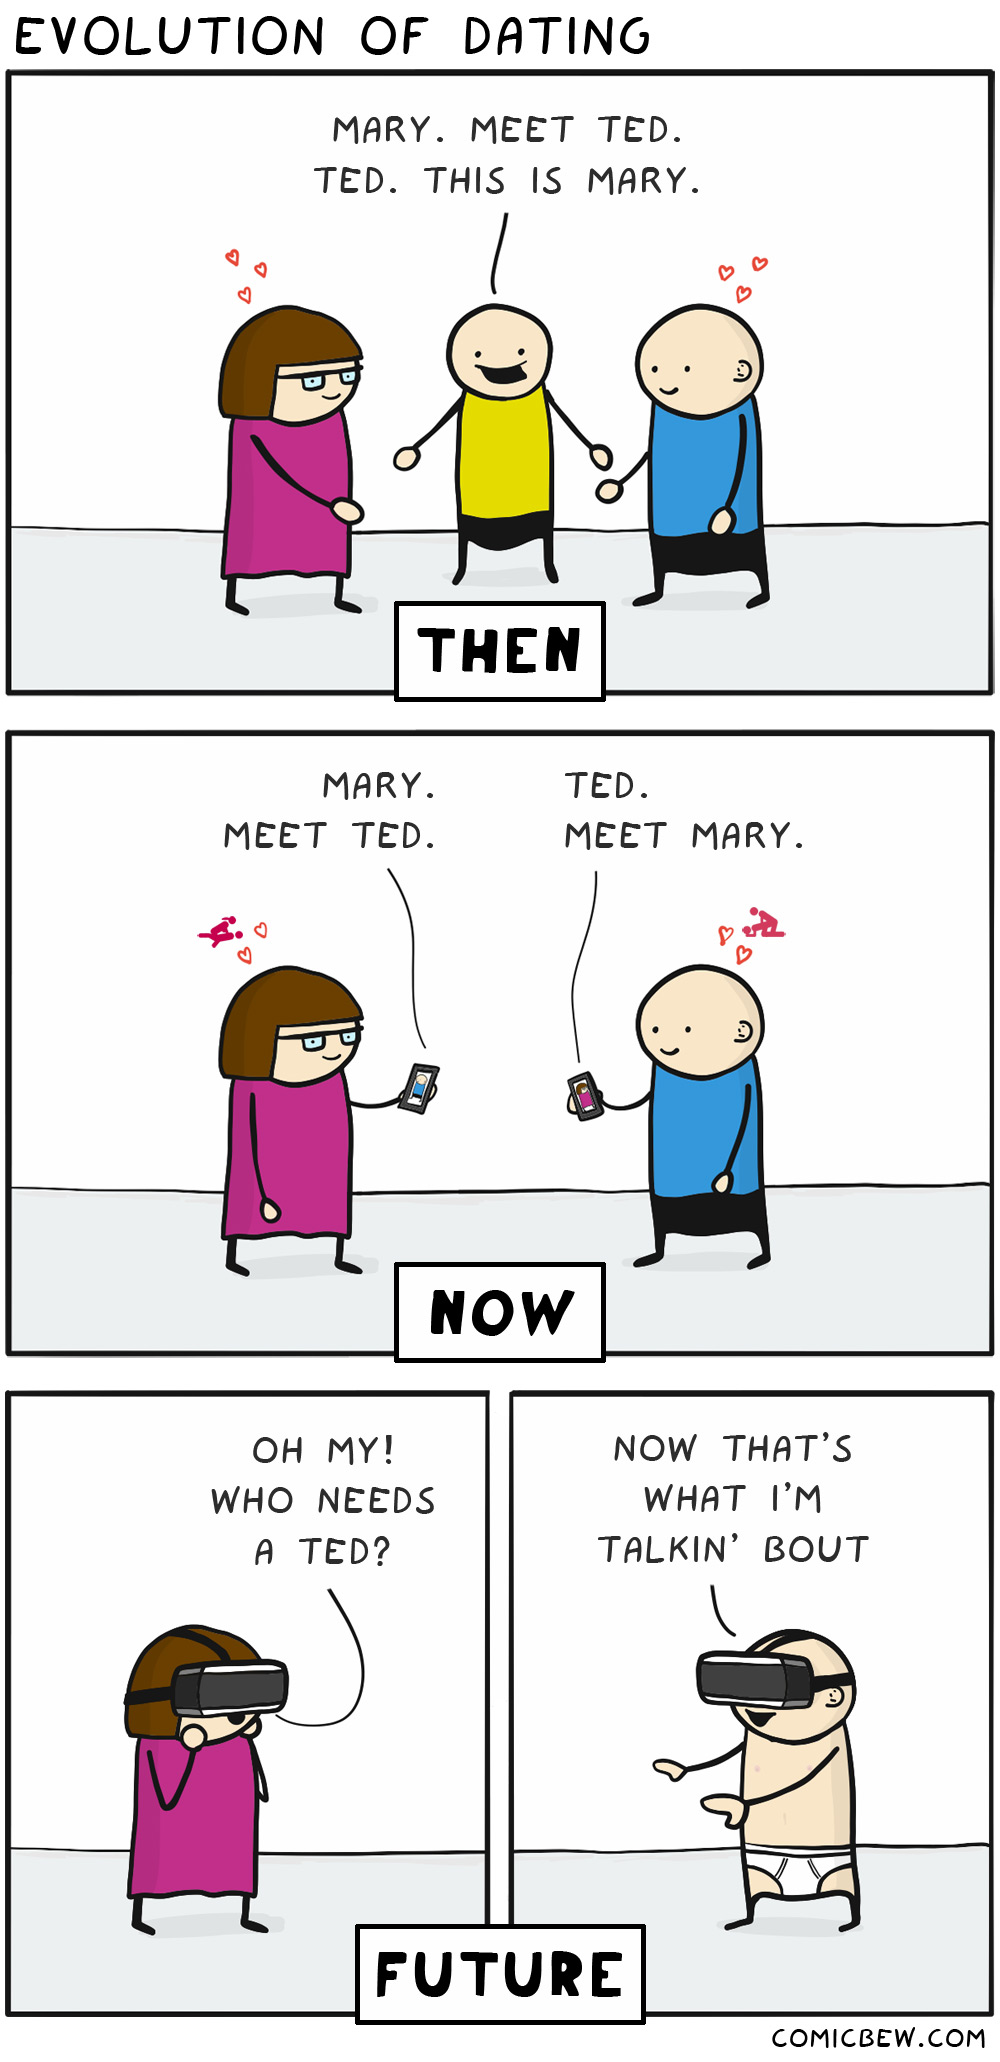 evolution-of-dating.jpg